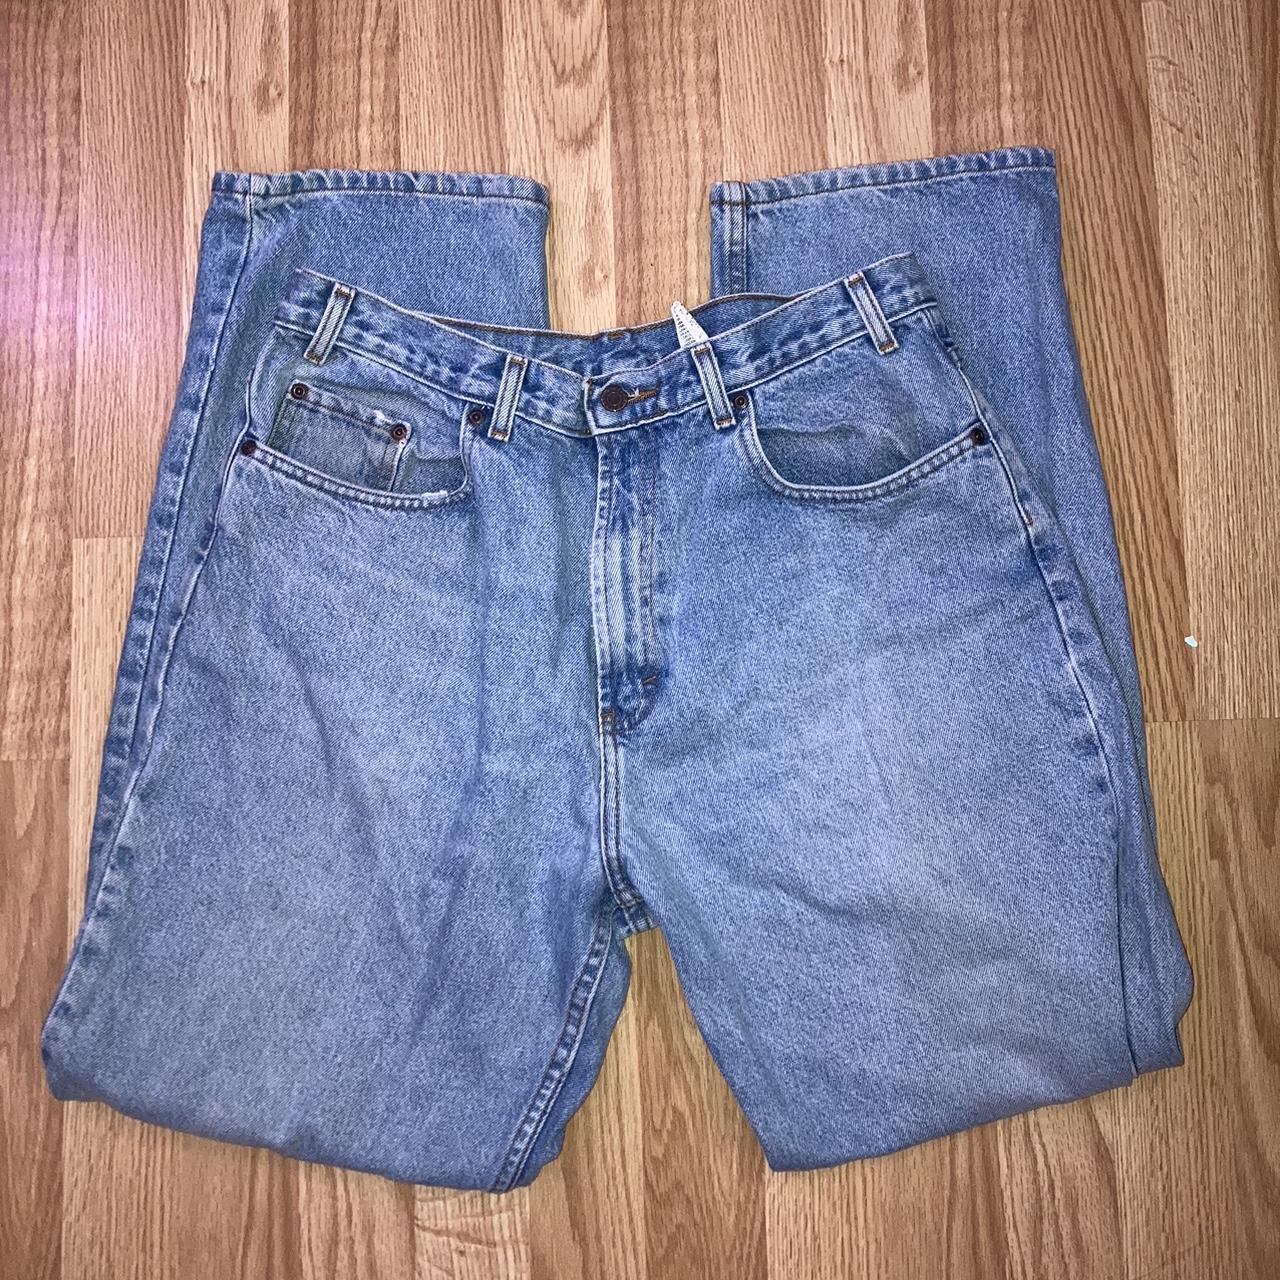 Costco Men's Jeans